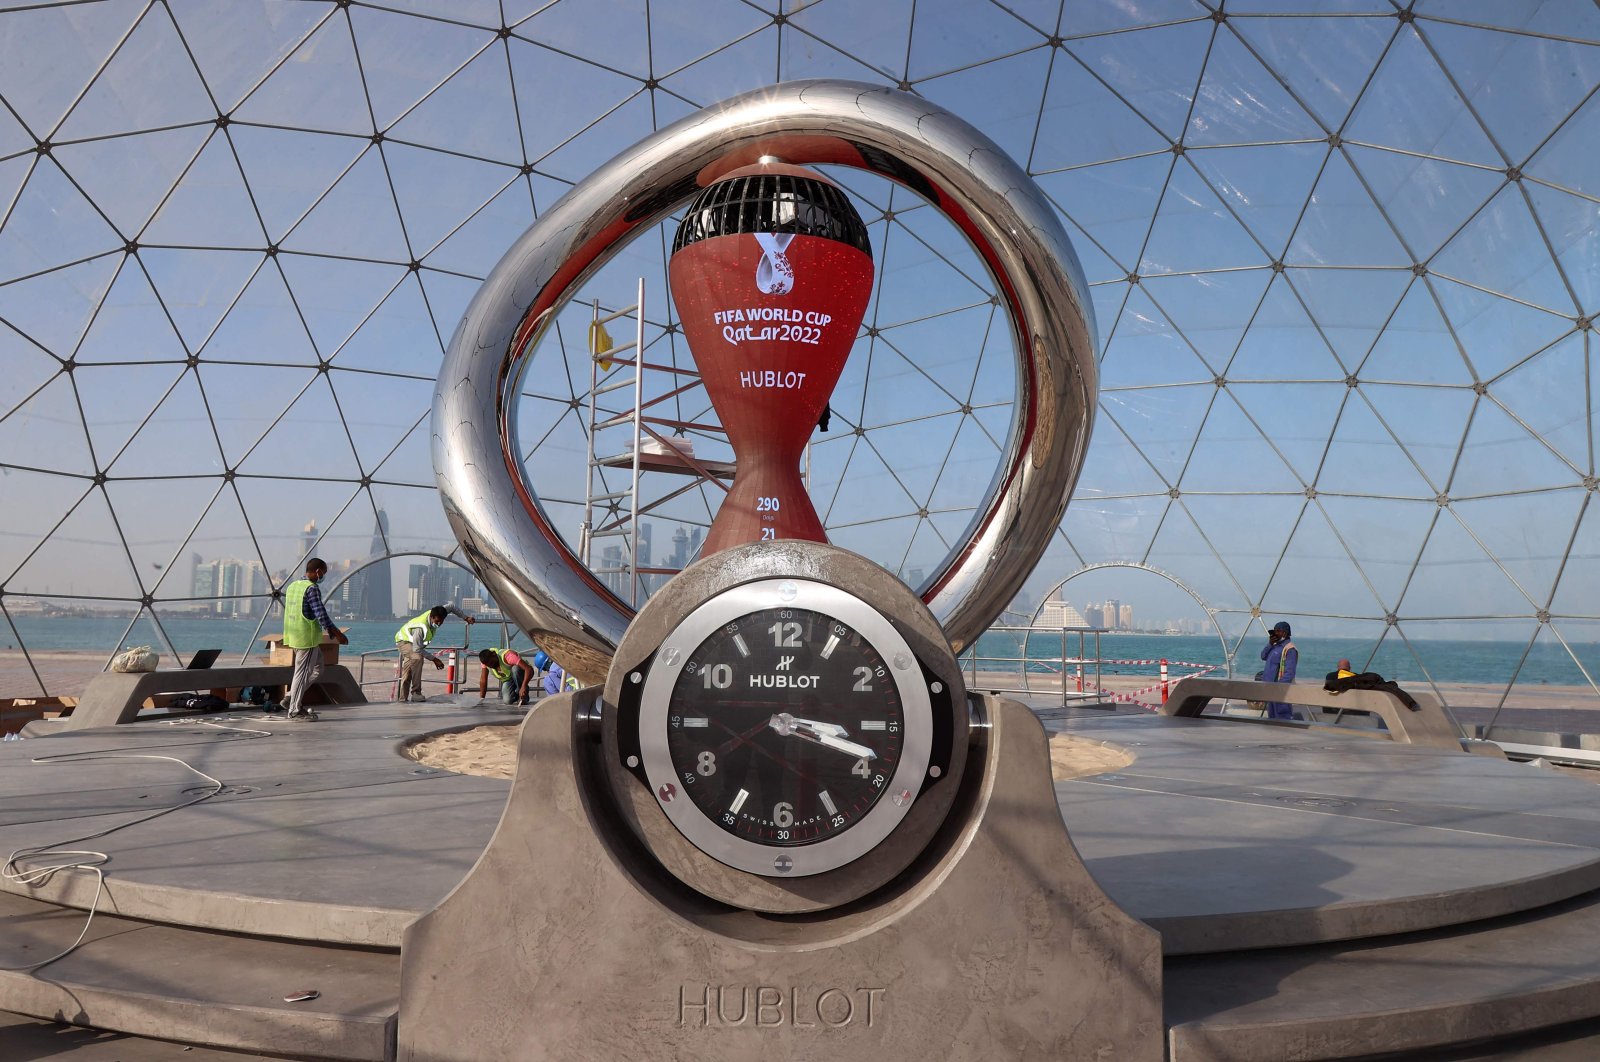 The FIFA World Cup 2022 countdown clock is seenin Doha, Qatar, Feb. 3, 2022. (AFP Photo)